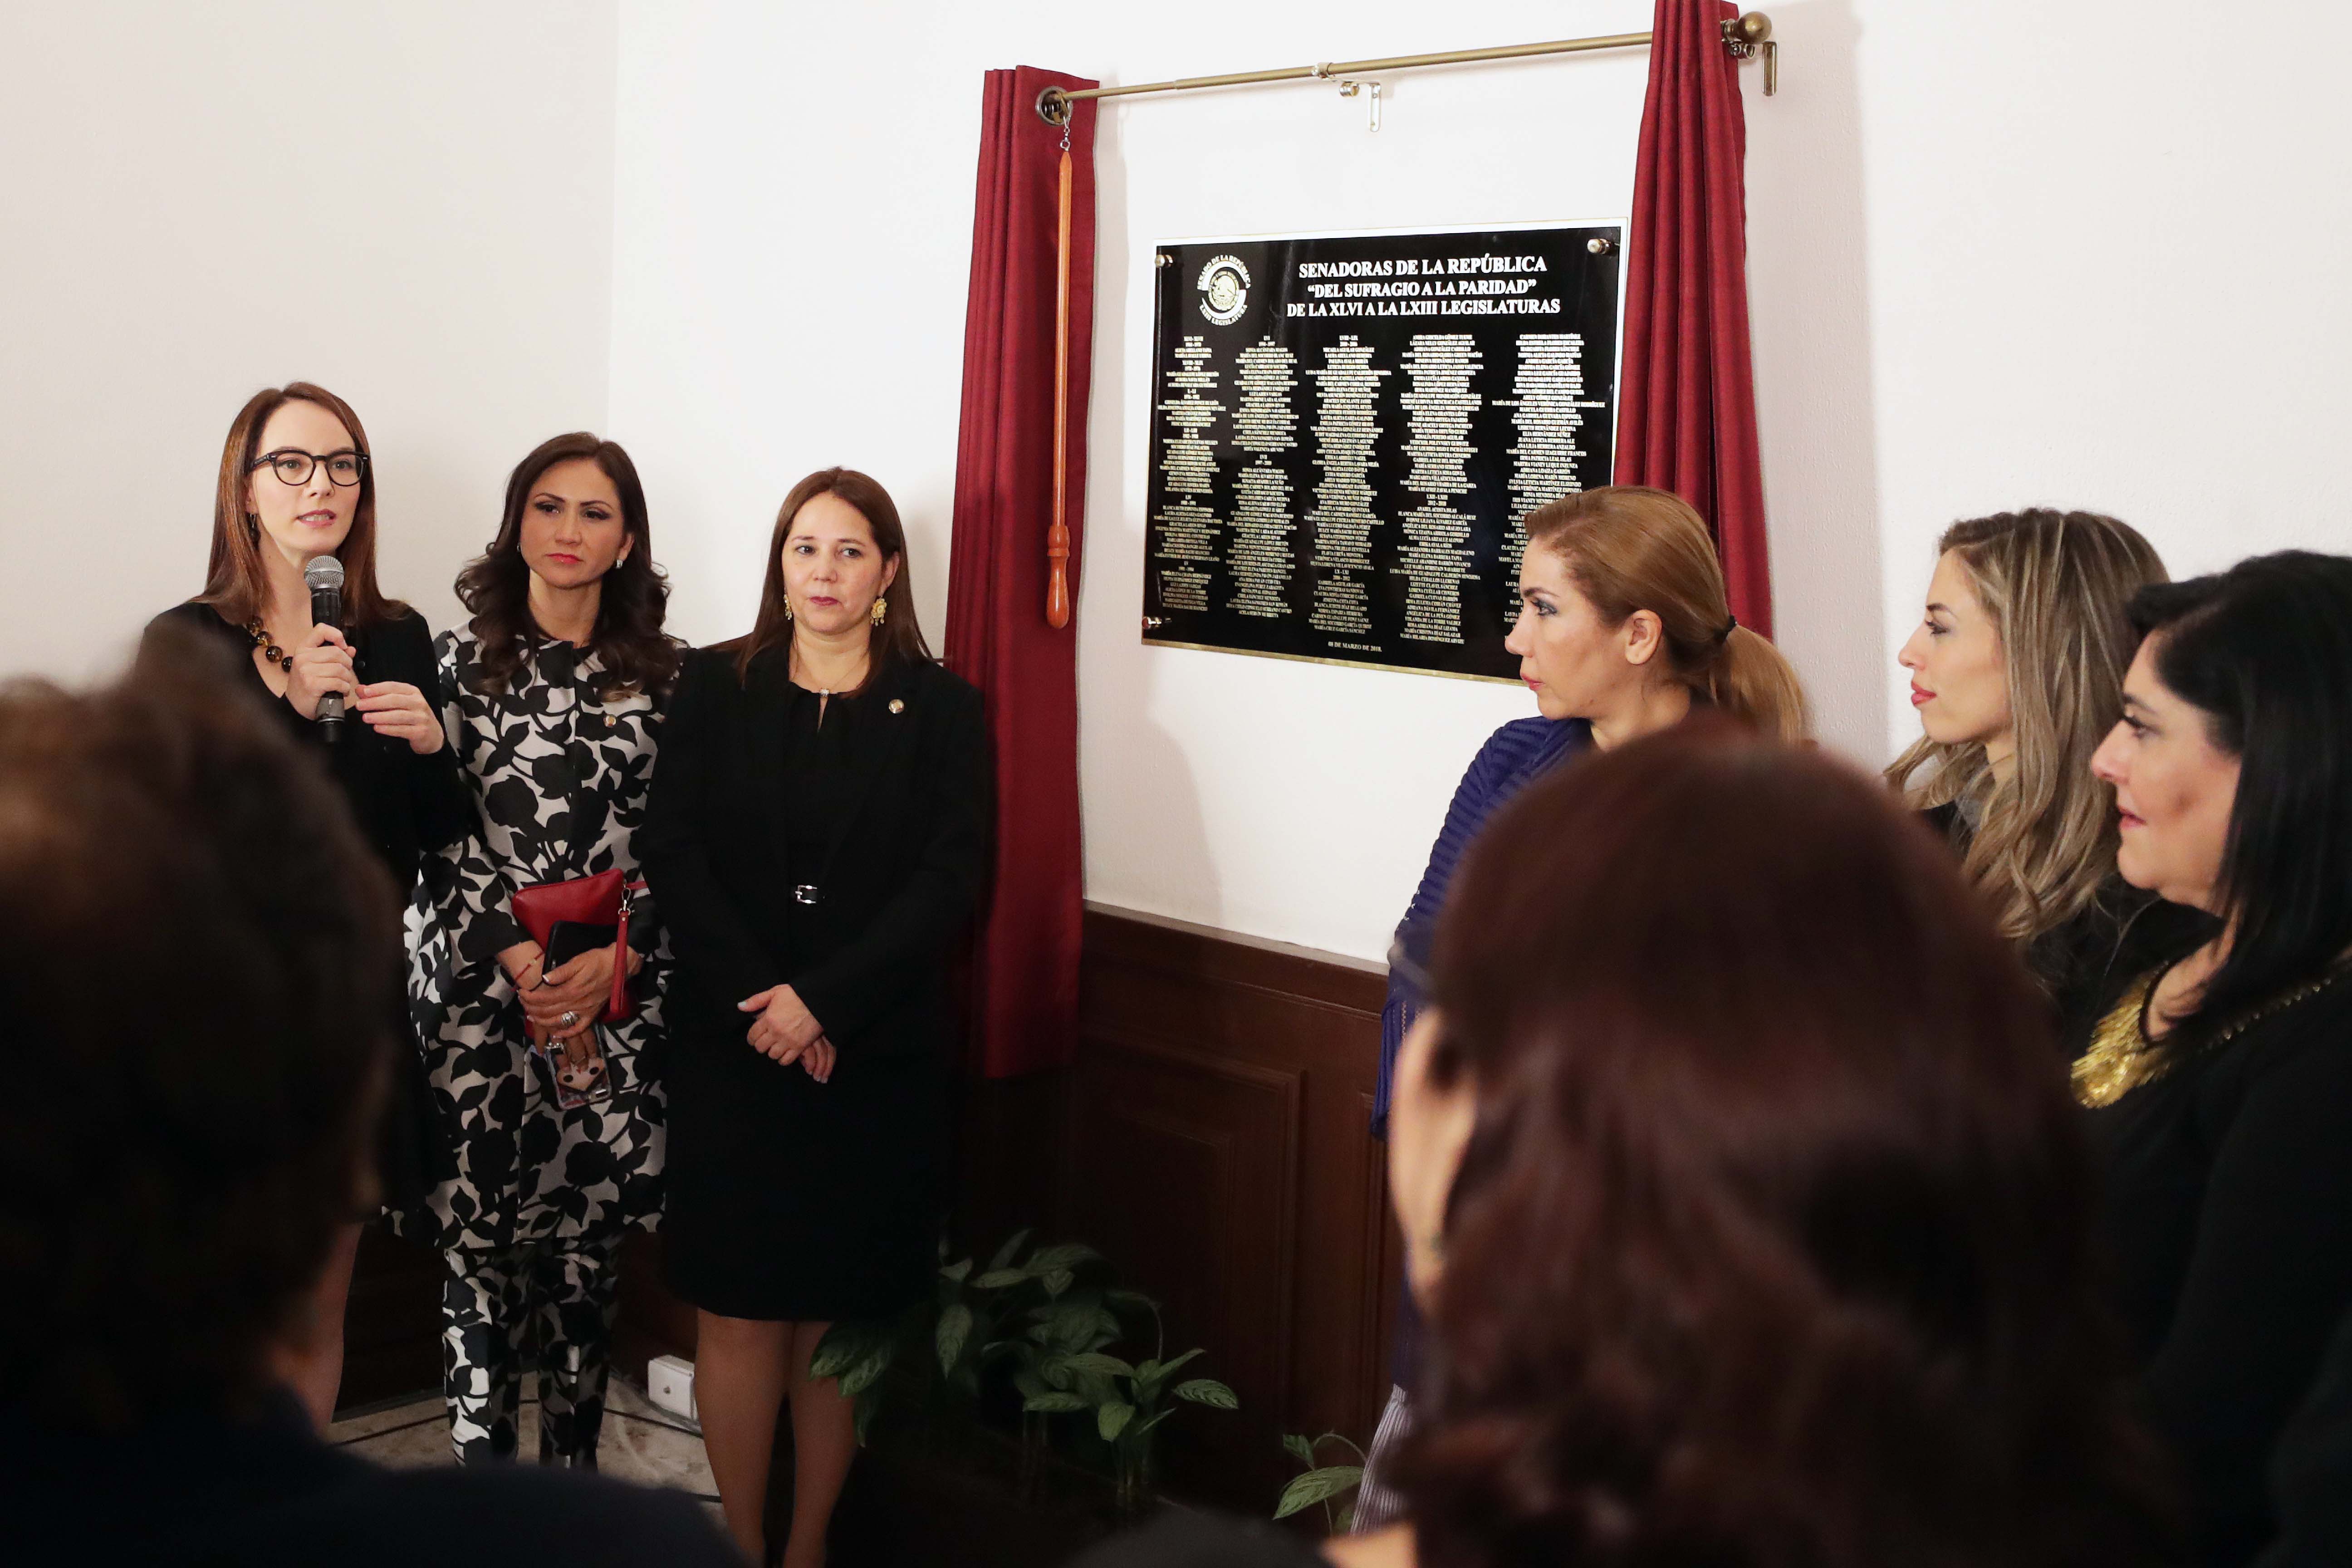  Inauguran Sala de Senadoras de la RepA?blica en la Casona de XicotA�ncatl